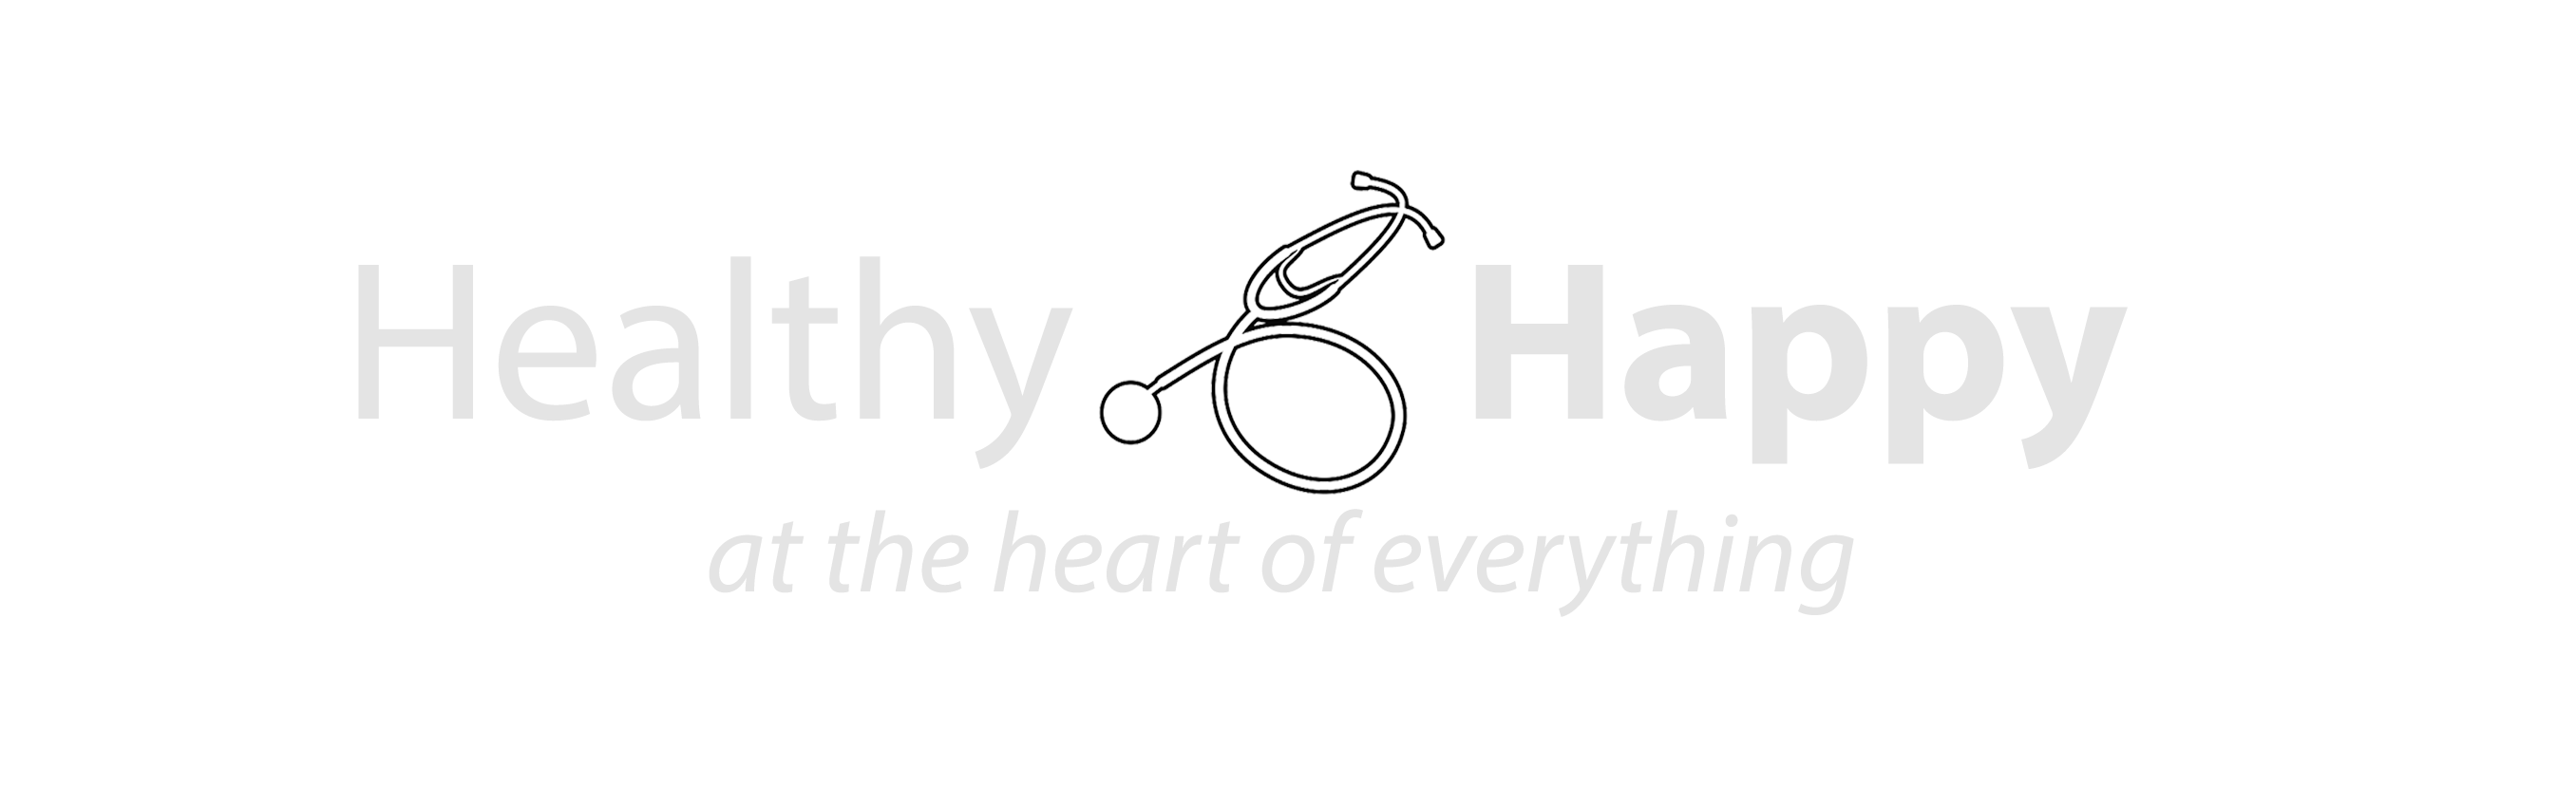 Healthy & Happy Logo